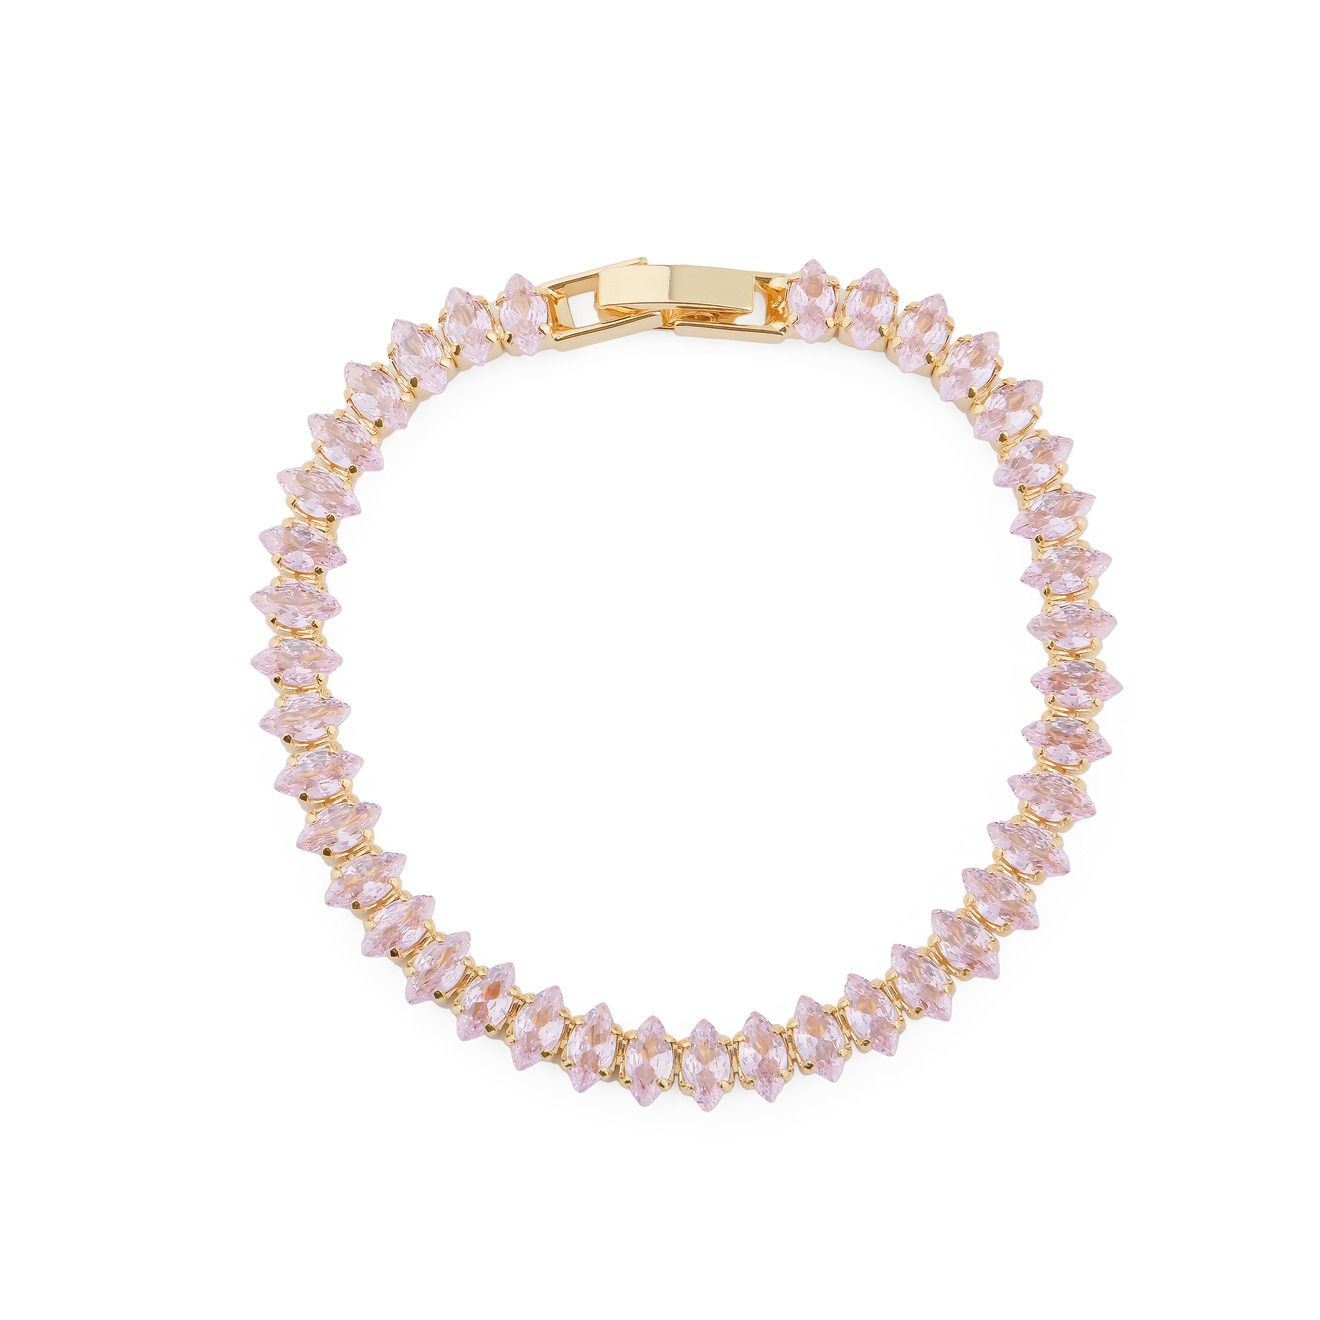 Herald Percy Браслет с розовыми кристаллами herald percy серебристый тонкий браслет с белыми кристаллами